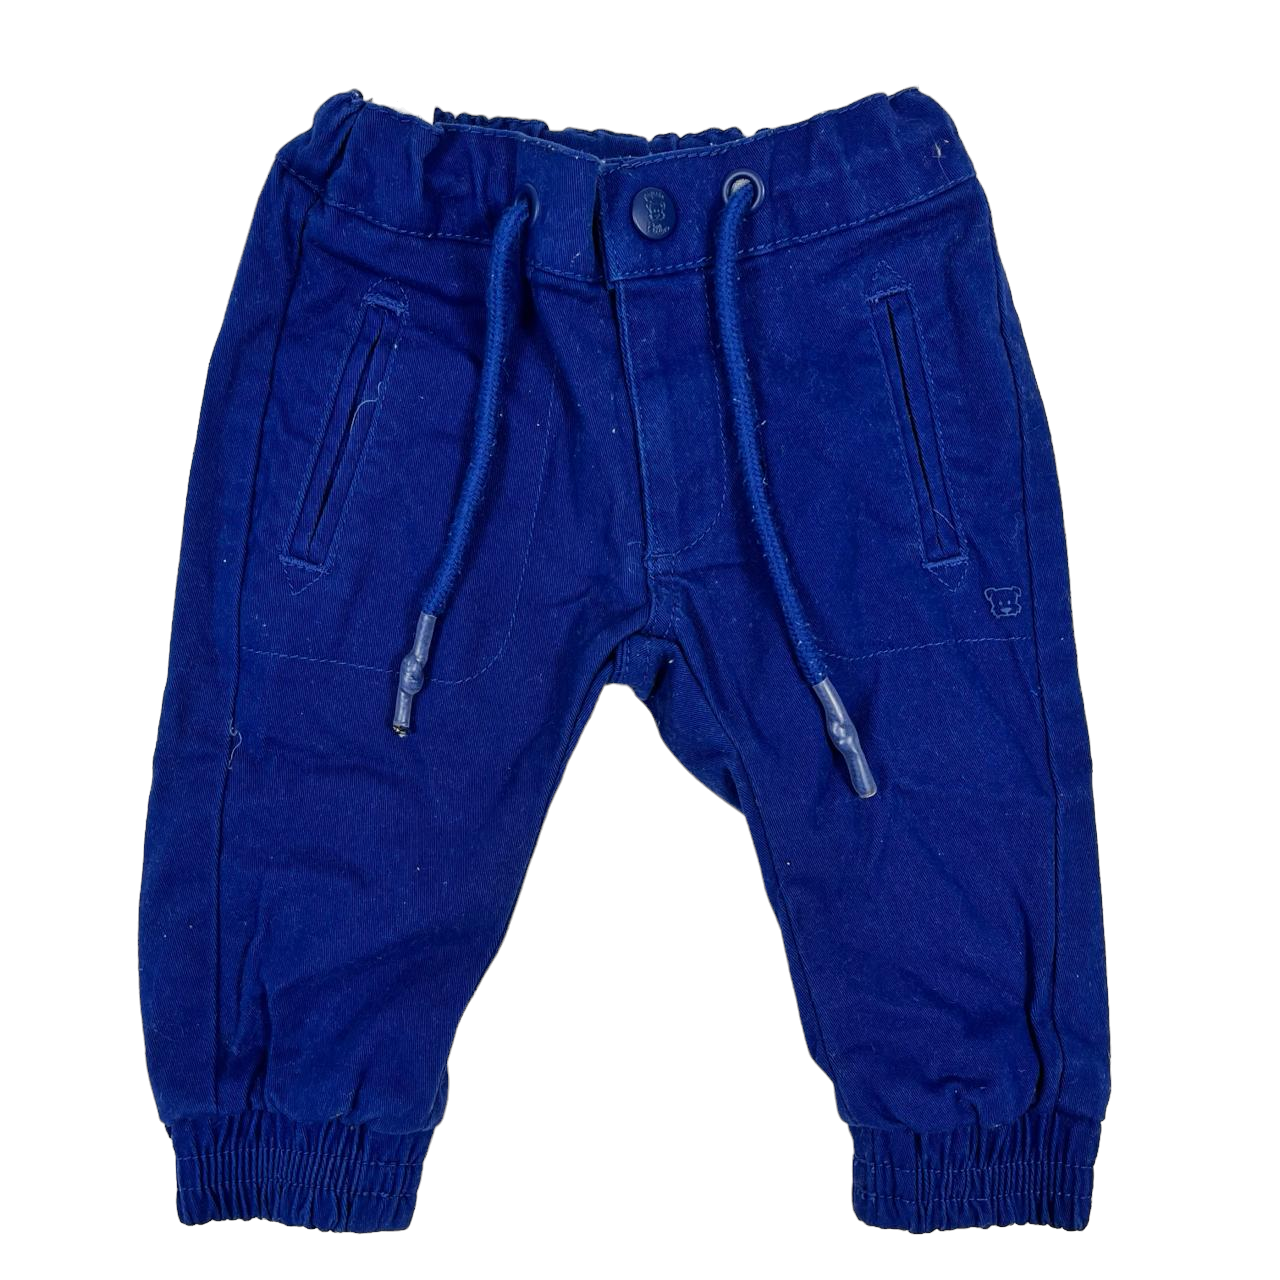 Pantalon azul con pretina ajustable con puños y bolsillo